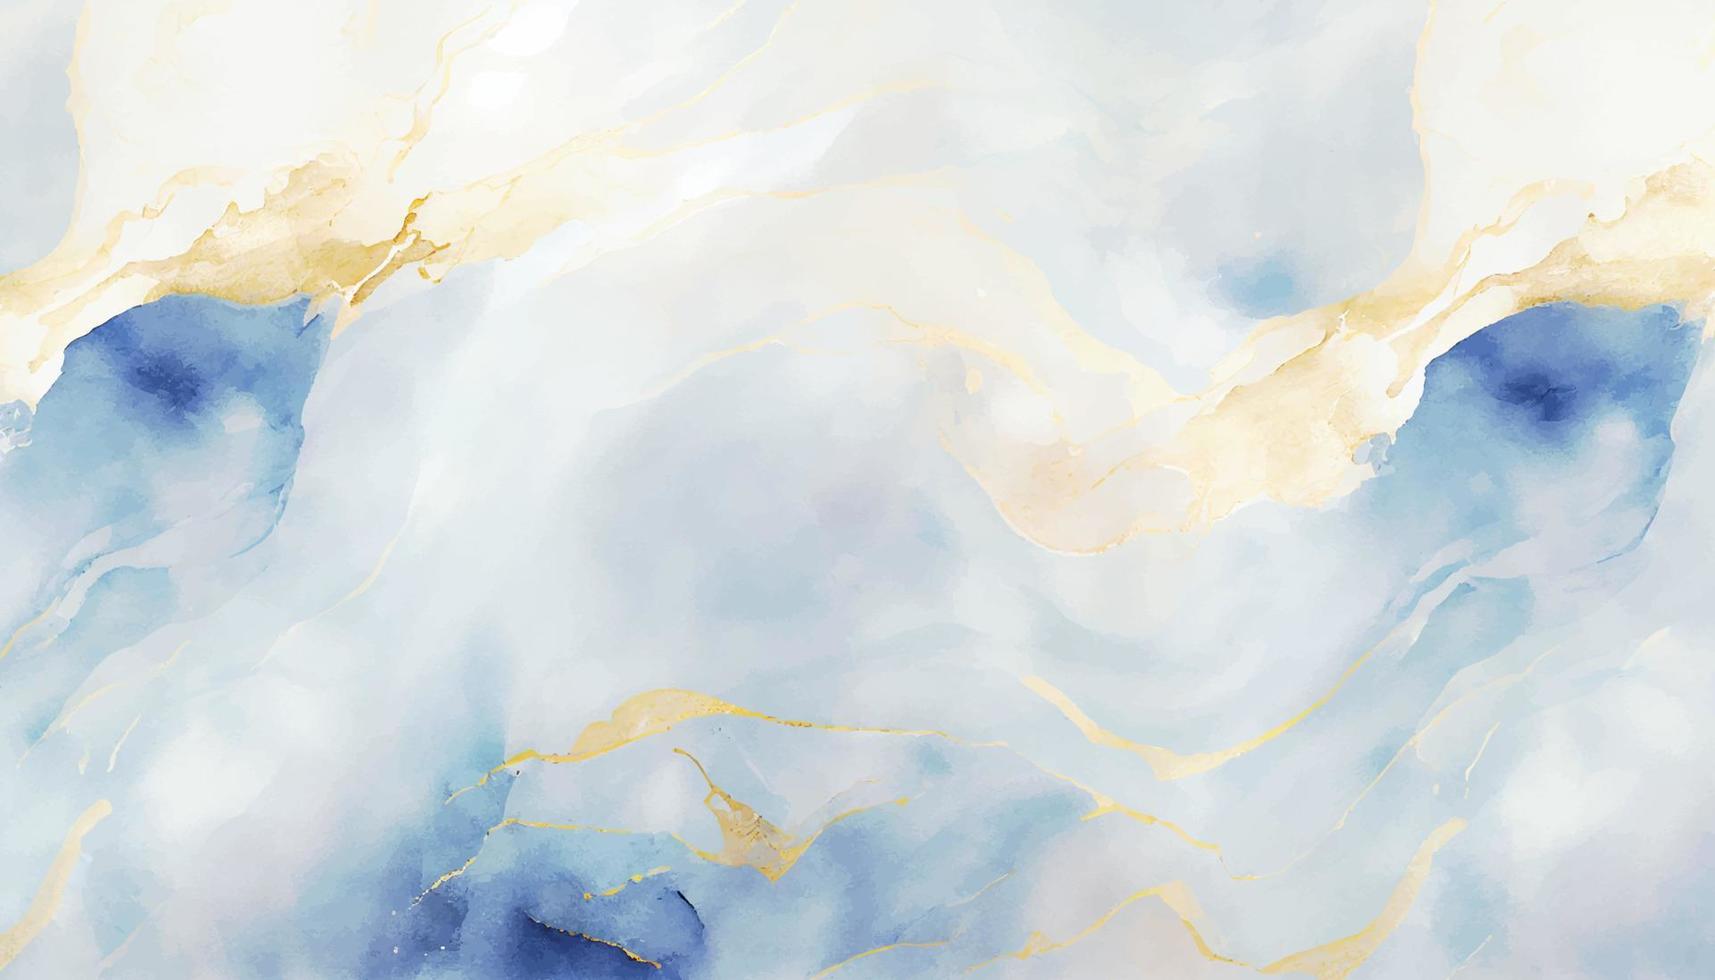 abstrakt blå flytande vattenfärg bakgrund med gyllene damm. cyan marmor alkohol bläck teckning effekt. vektor illustration design mall för bröllop inbjudan, meny, rsvp, baner.